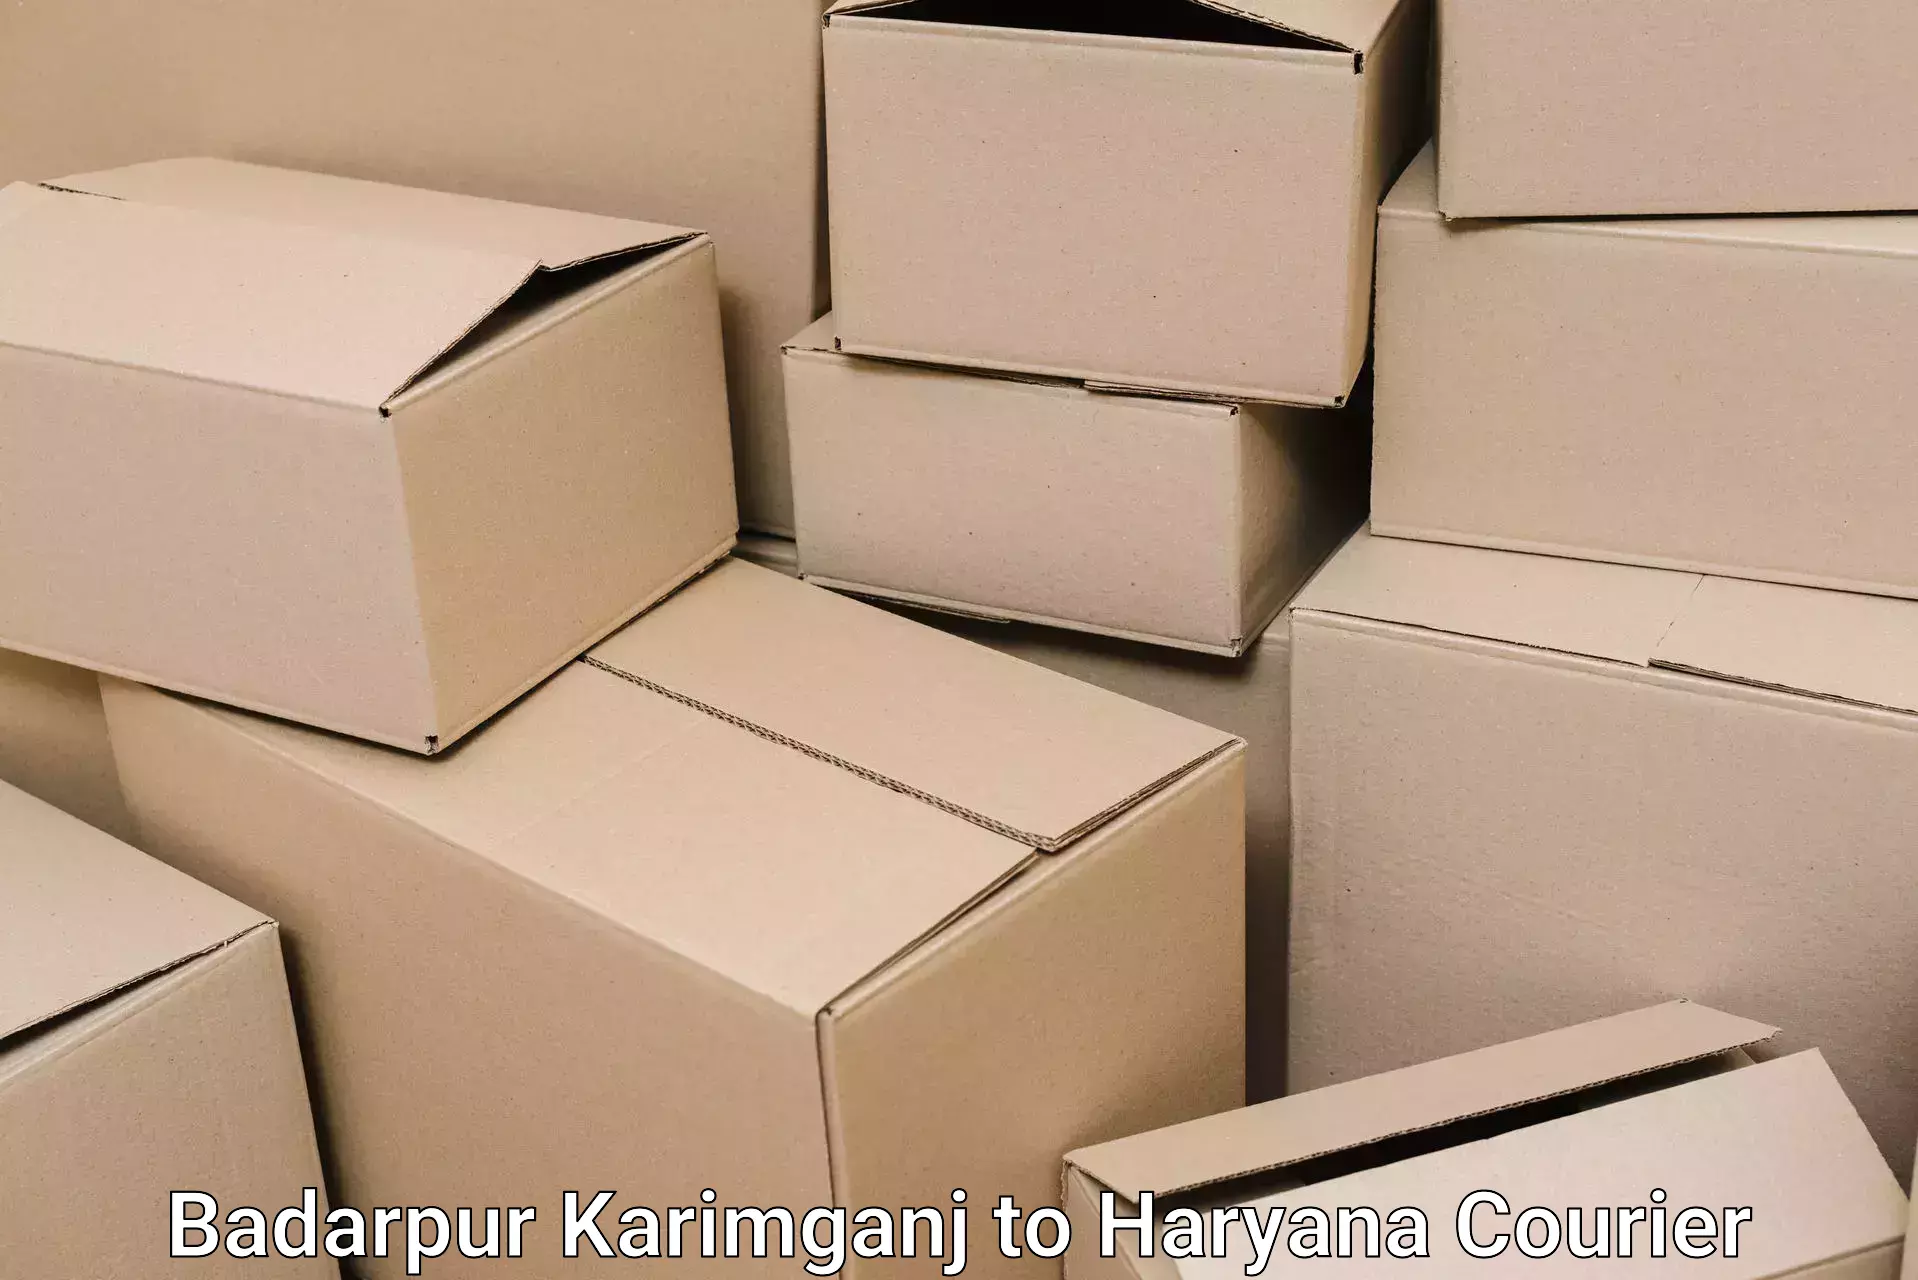 Dependable moving services Badarpur Karimganj to NIT Kurukshetra